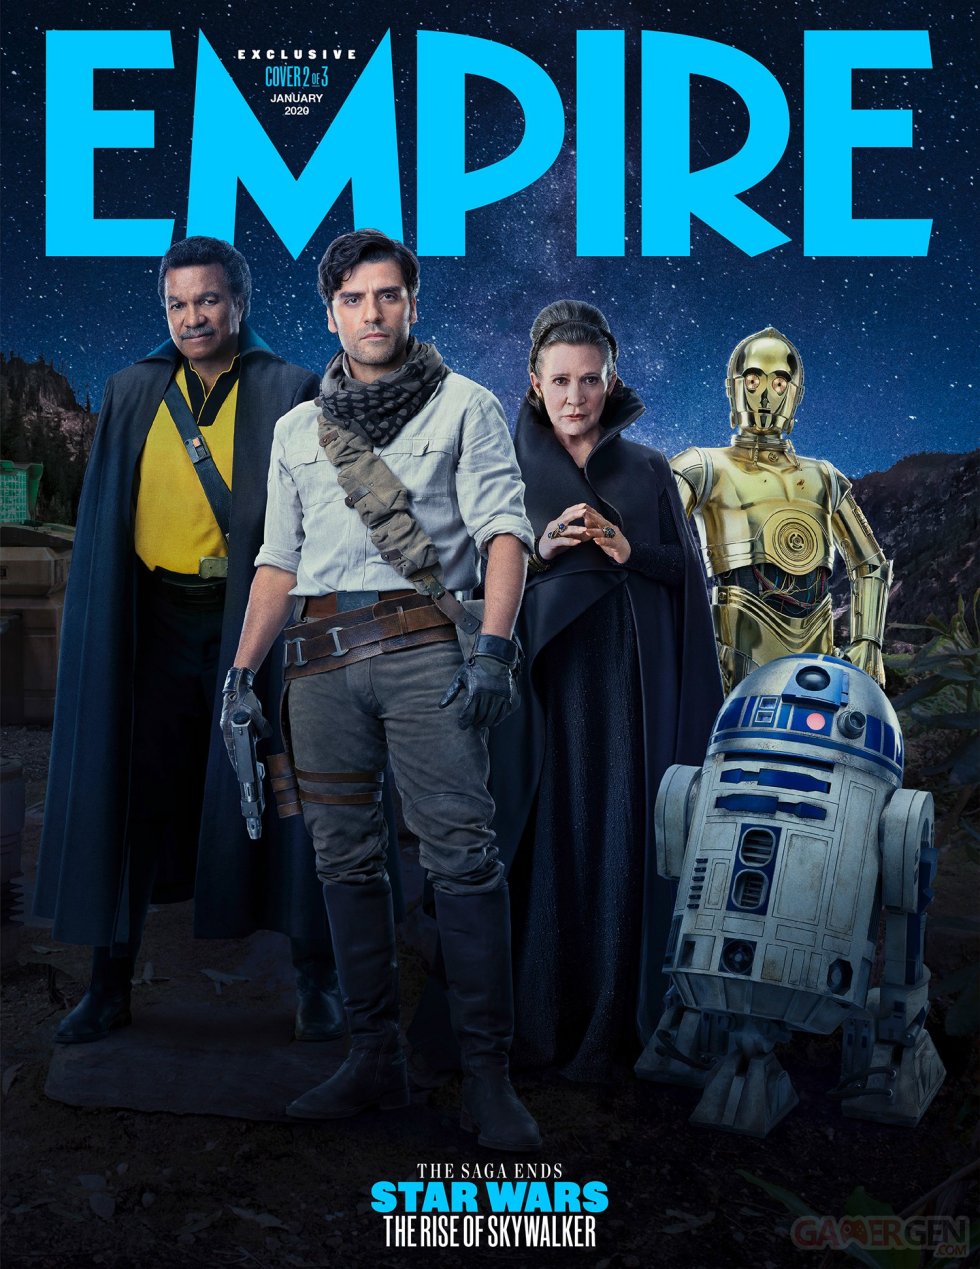 Star-Wars-Ascension-de-Skywalker-Empire-02-23-11-2019